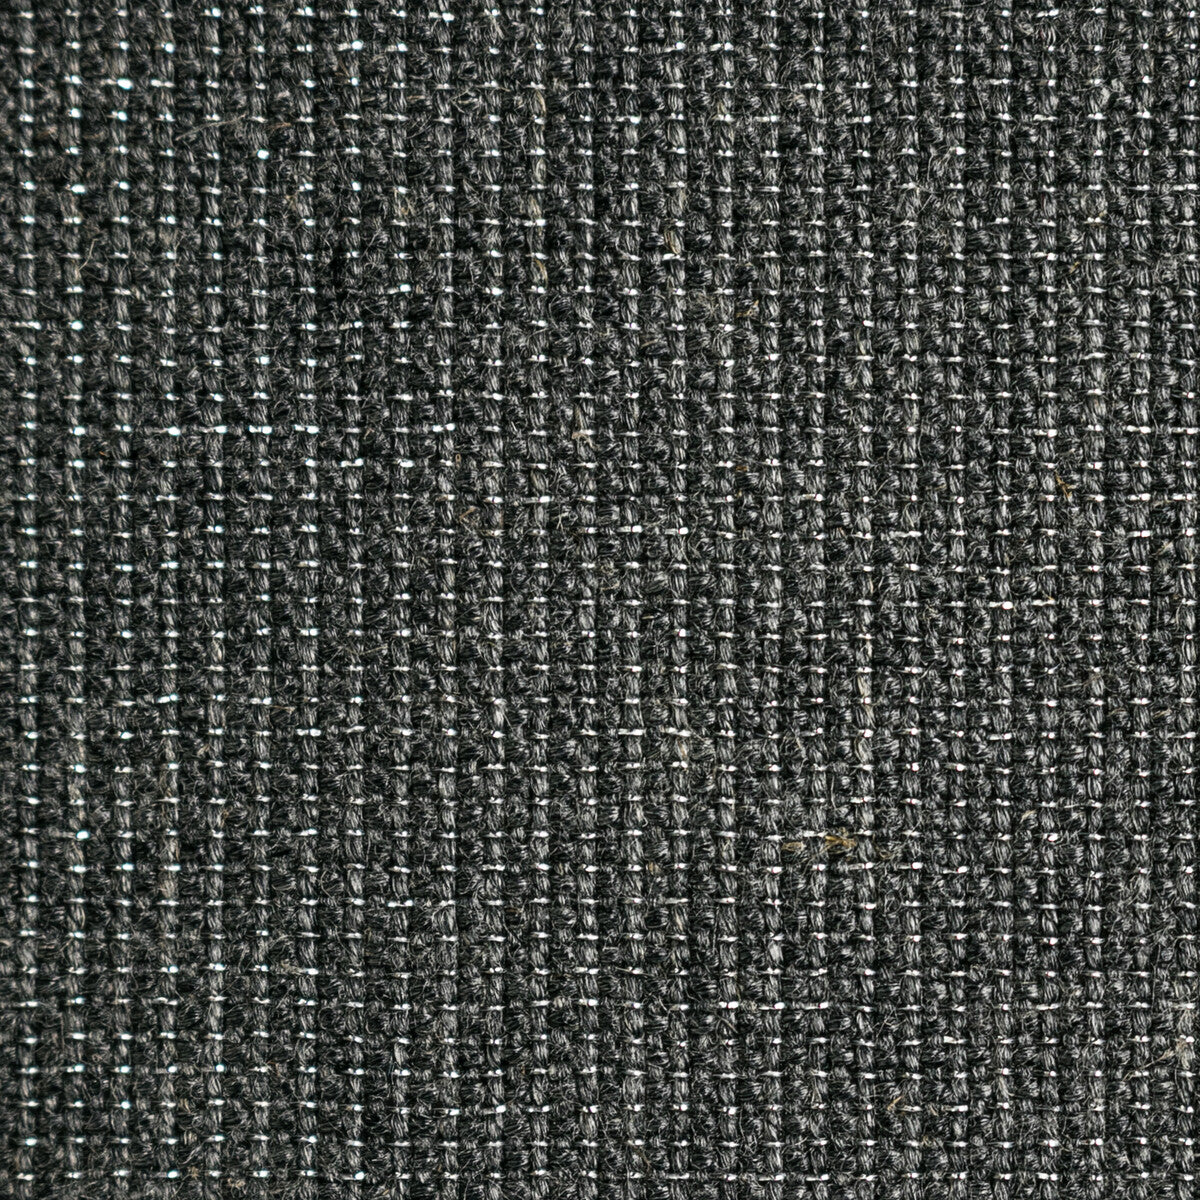 Kravet Basics fabric in 35785-21 color - pattern 35785.21.0 - by Kravet Basics